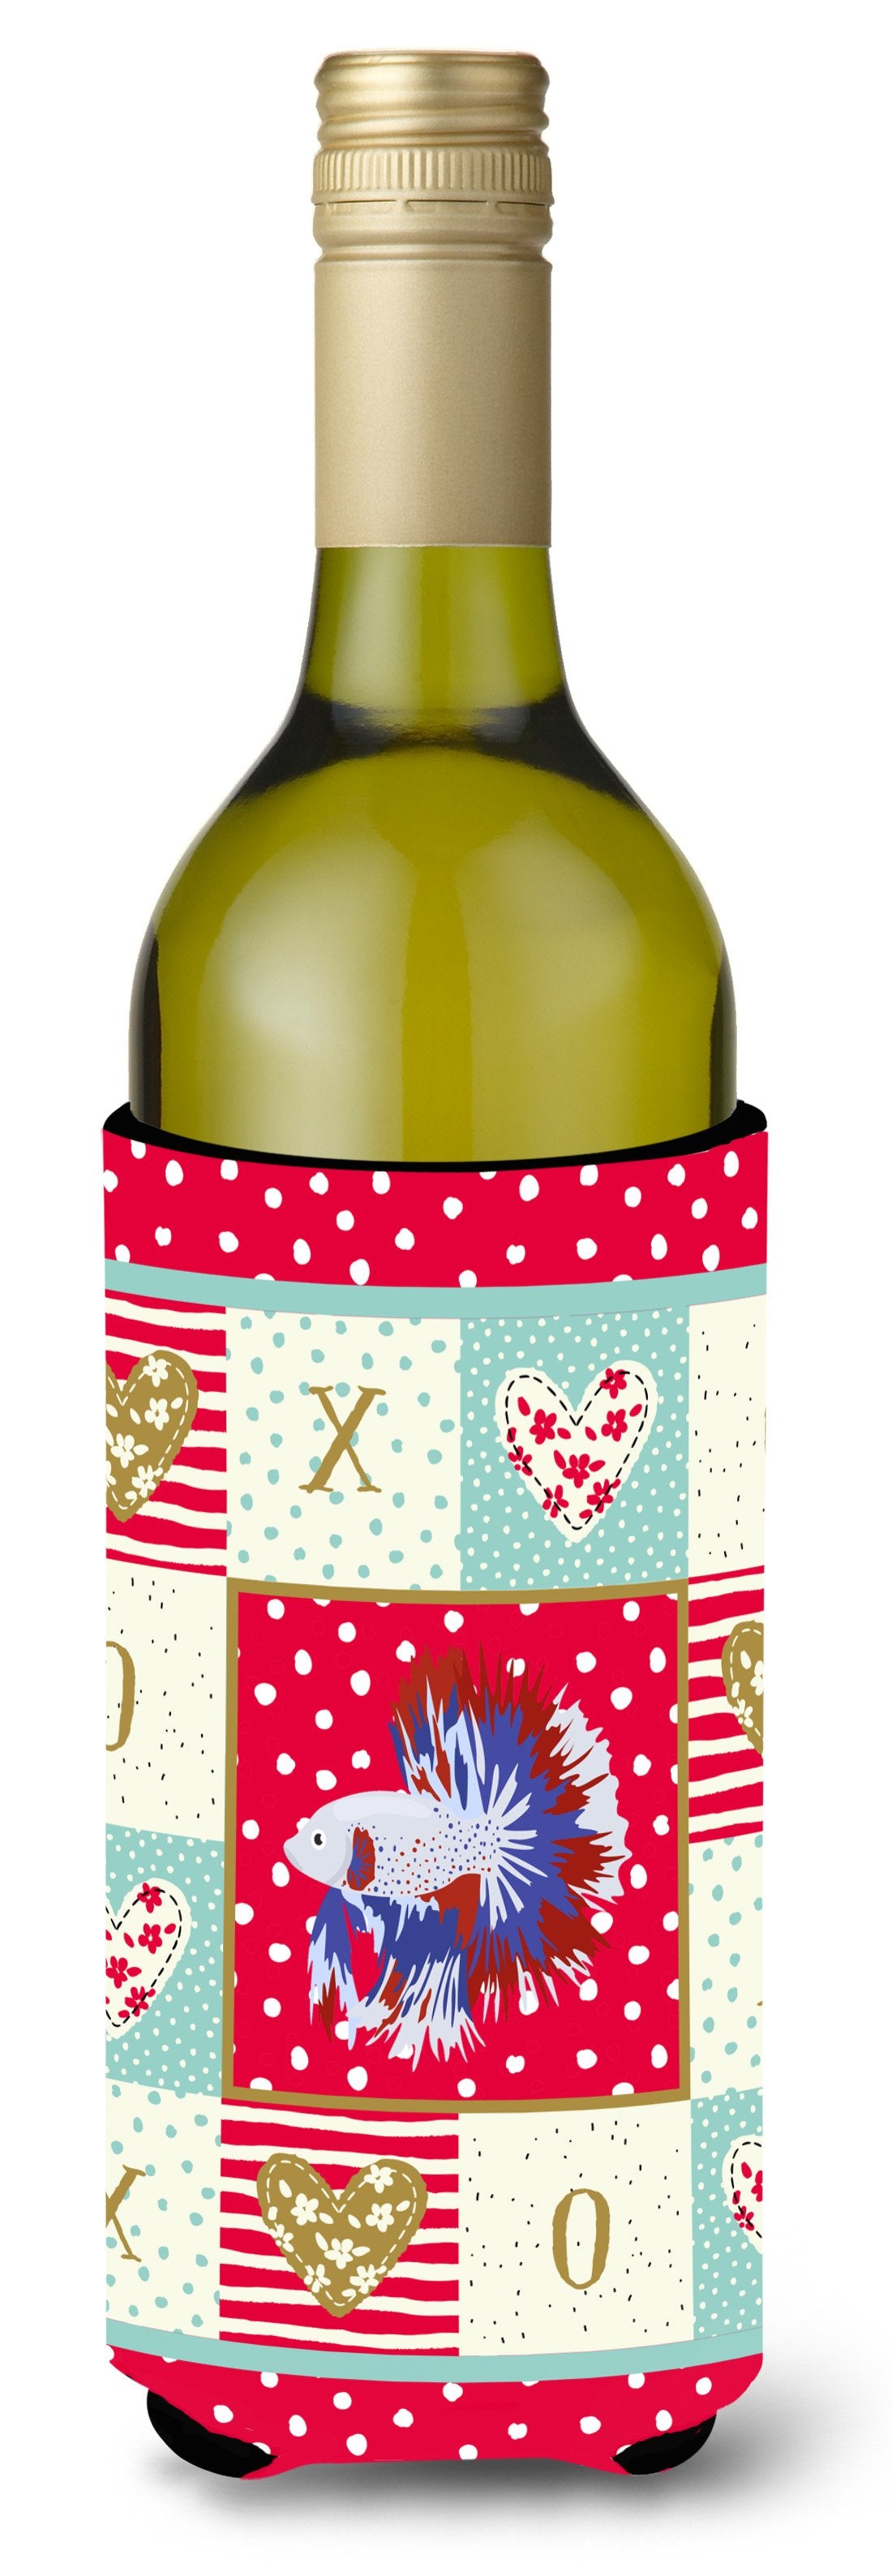 Comb Tail Betta Love Wine Bottle Hugger CK5483LITERK by Caroline's Treasures